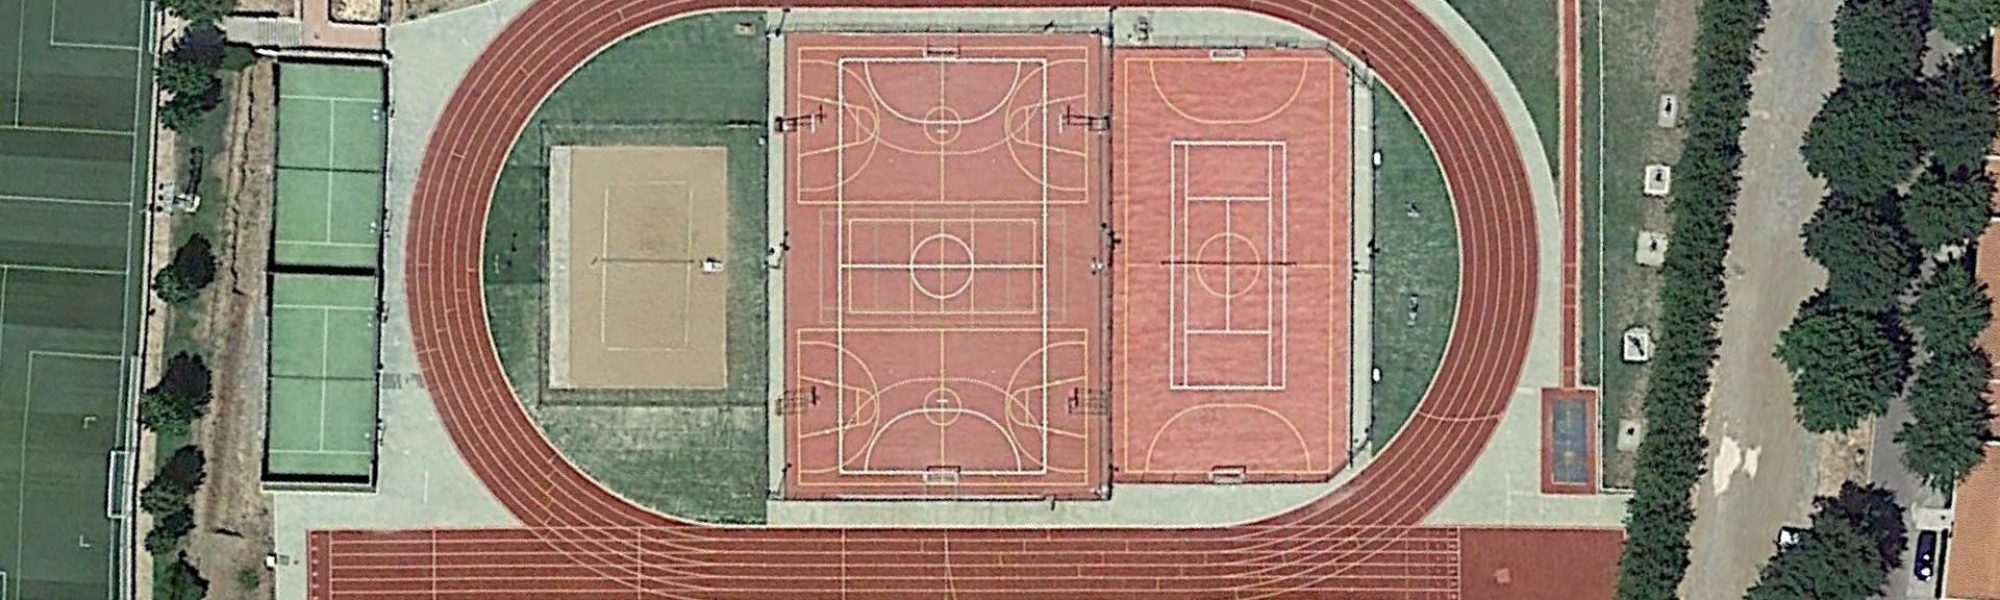 Vista aérea de la pista de atletismo de Aracena, con su actual pavimento.